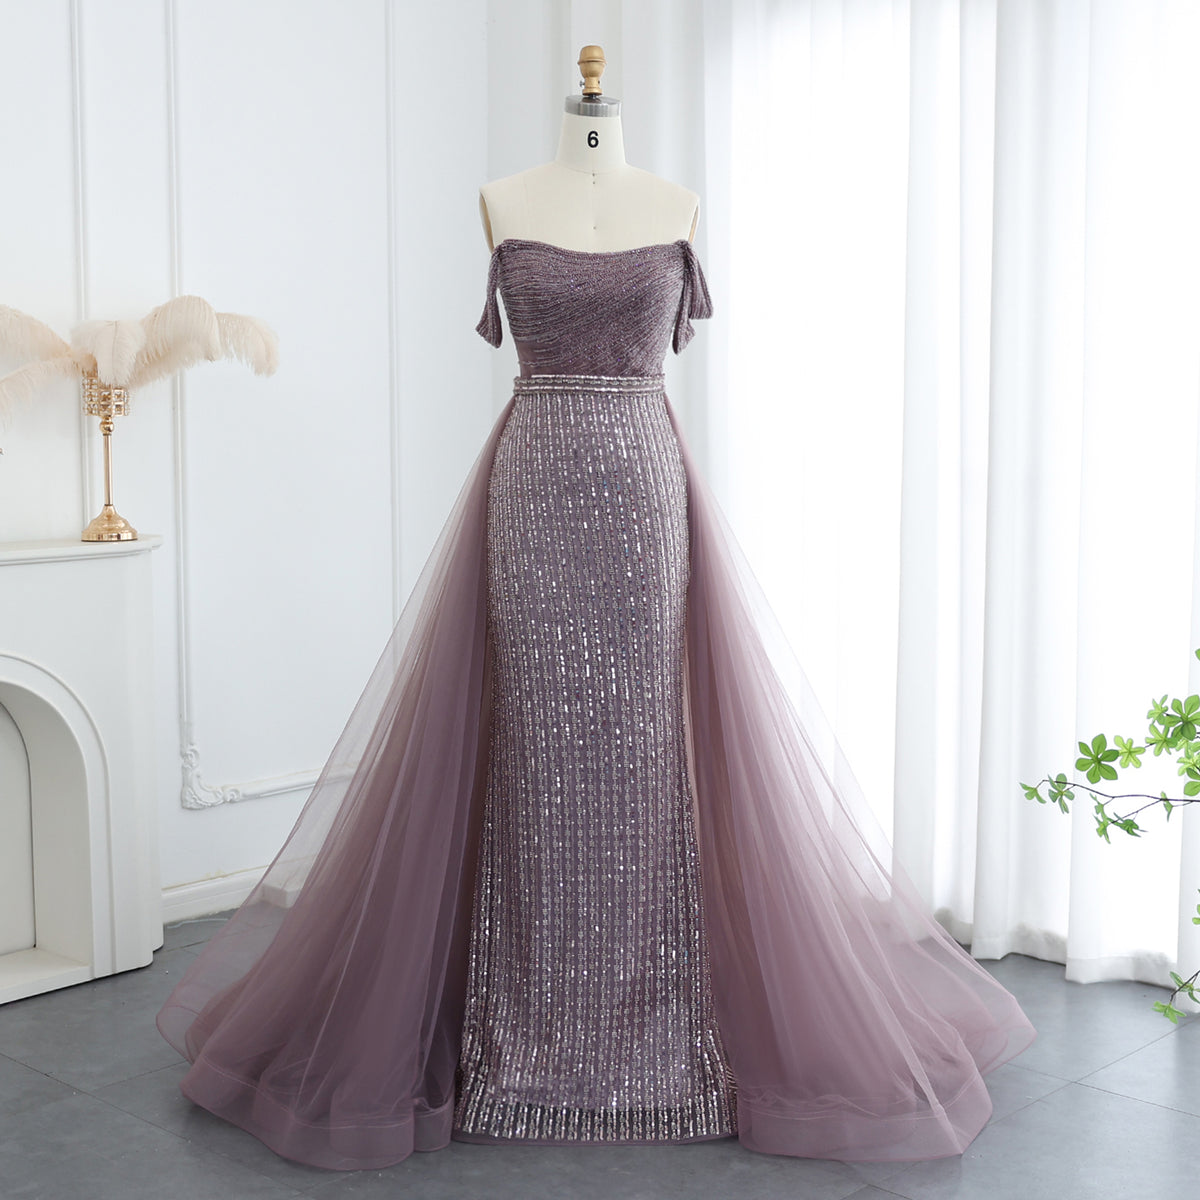 Sharon Said Elegante Burgunder Meerjungfrau Abendkleider mit Langarm Luxus Dubai Kristall Frauen Hochzeit Formale Party Kleid SS146